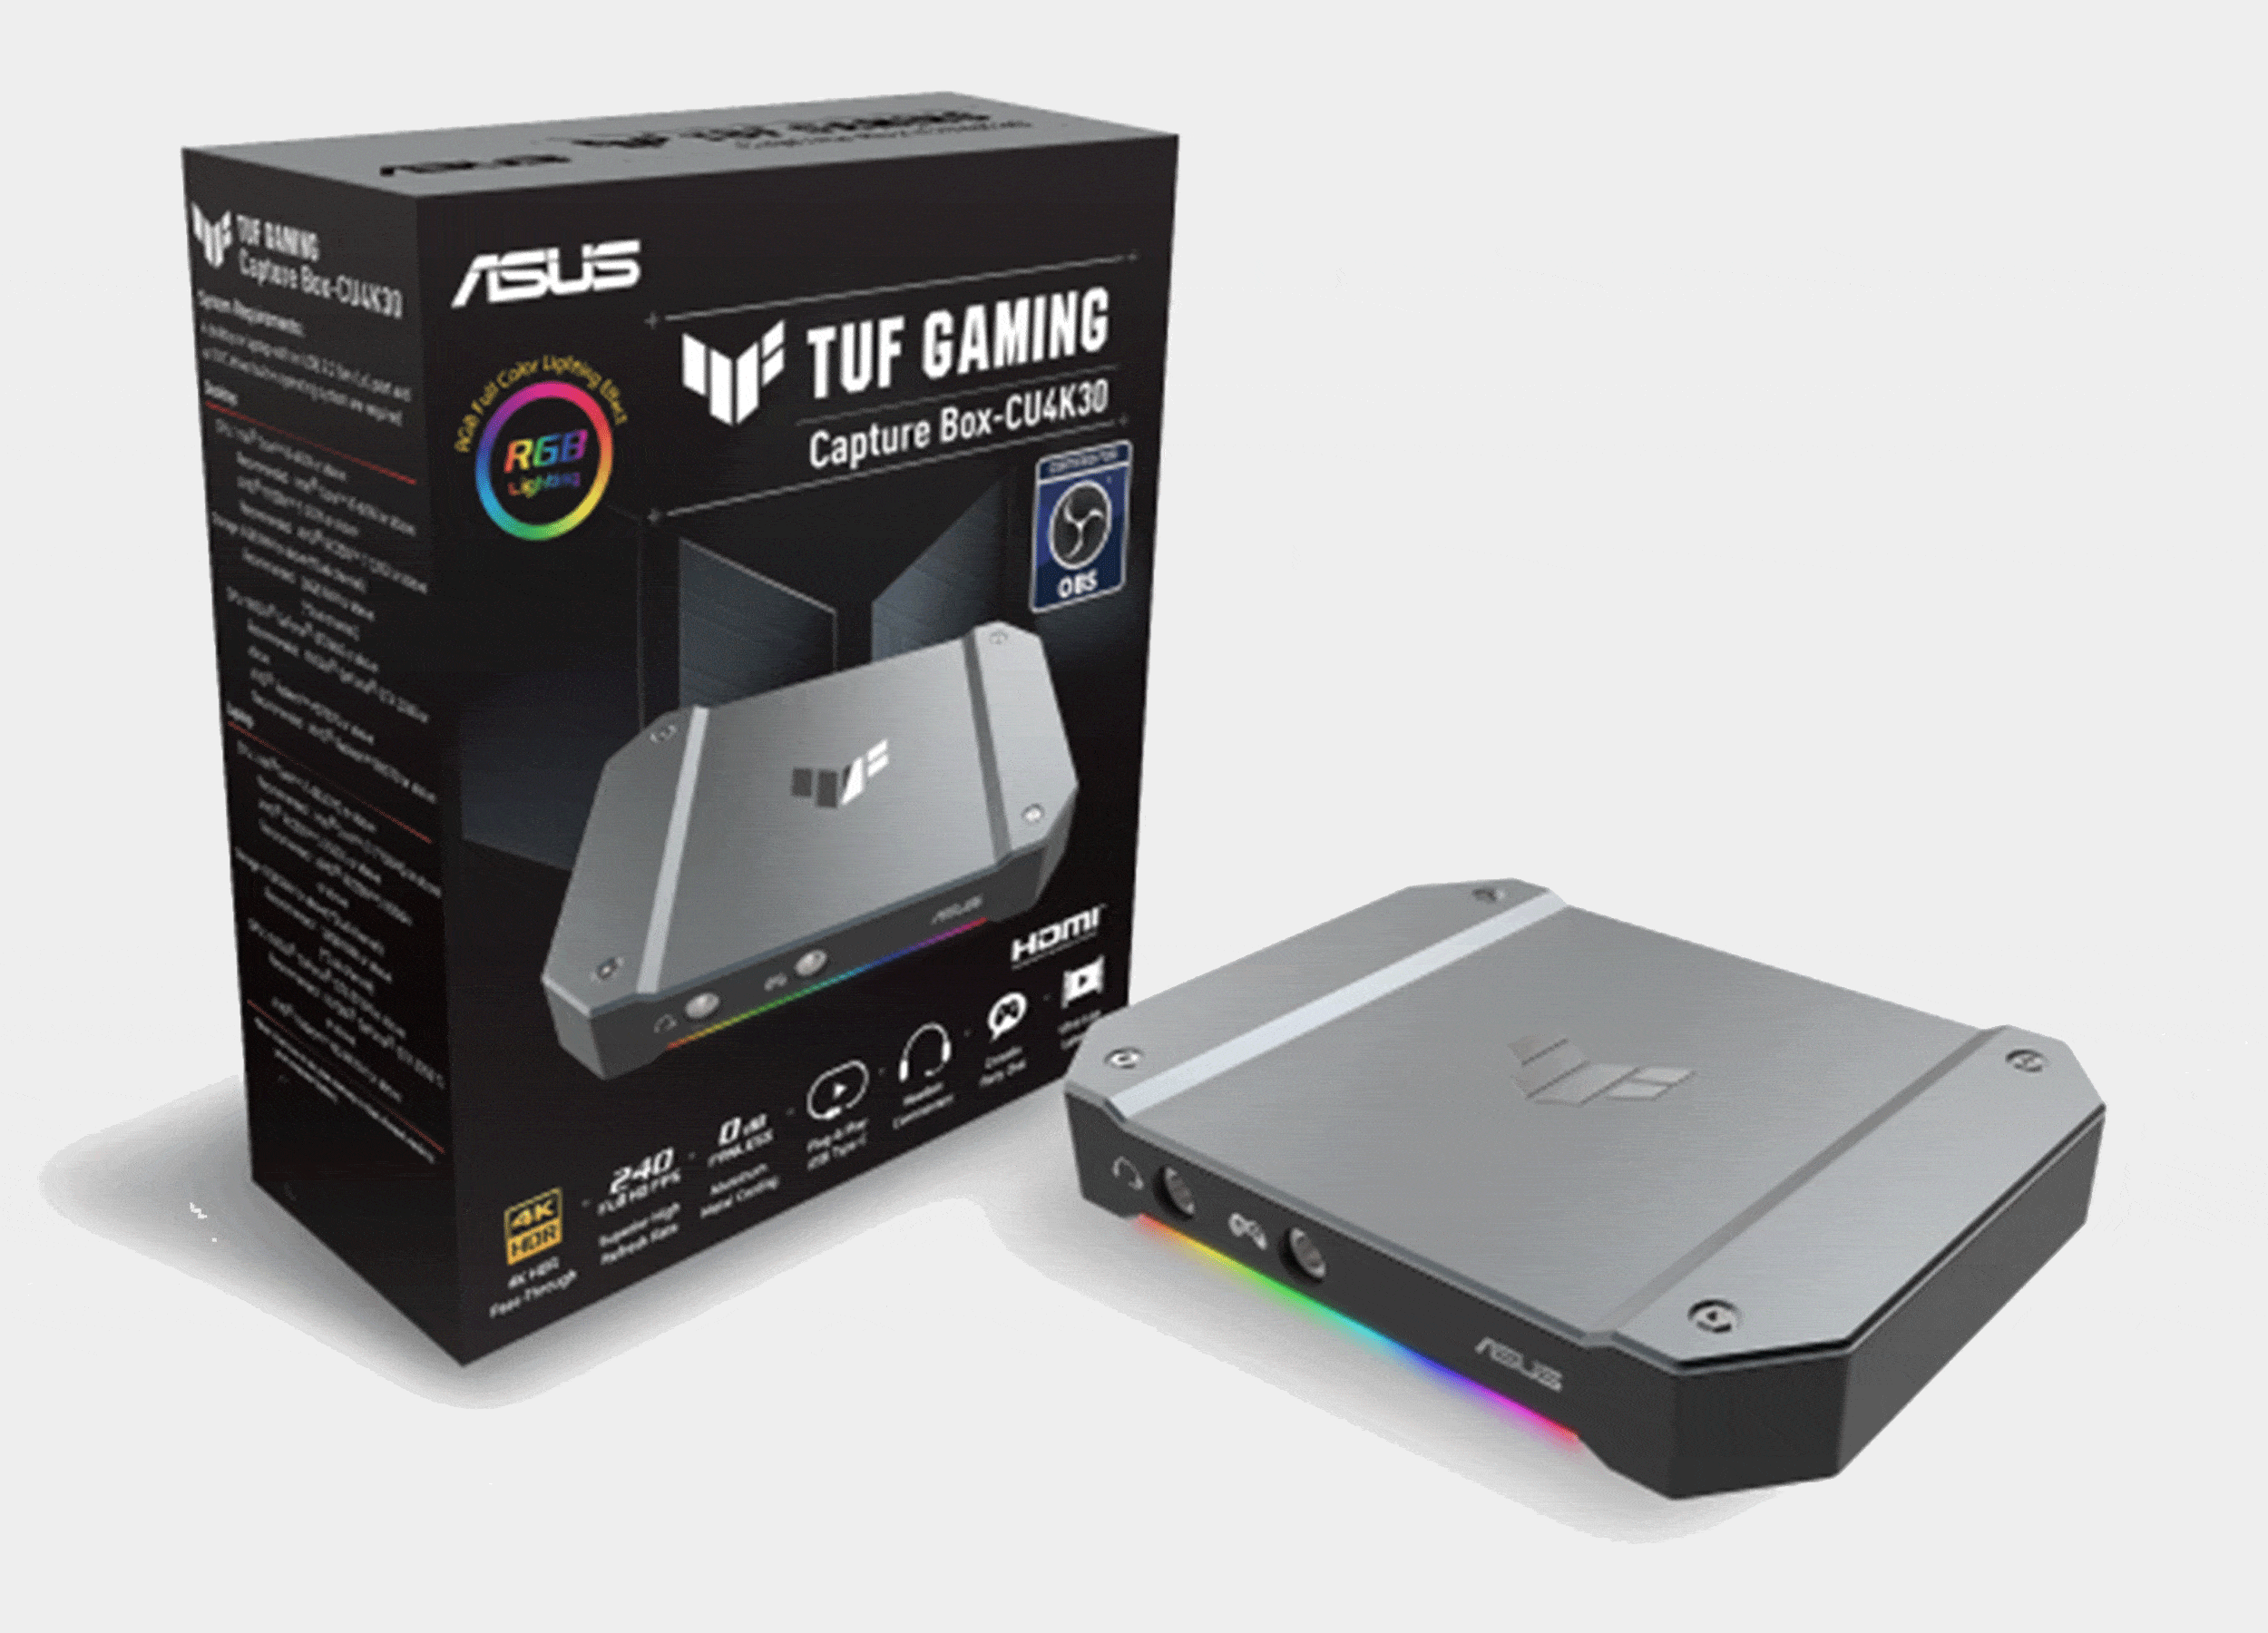 ASUS TUF Gaming CAPTURE BOX-CU4K30